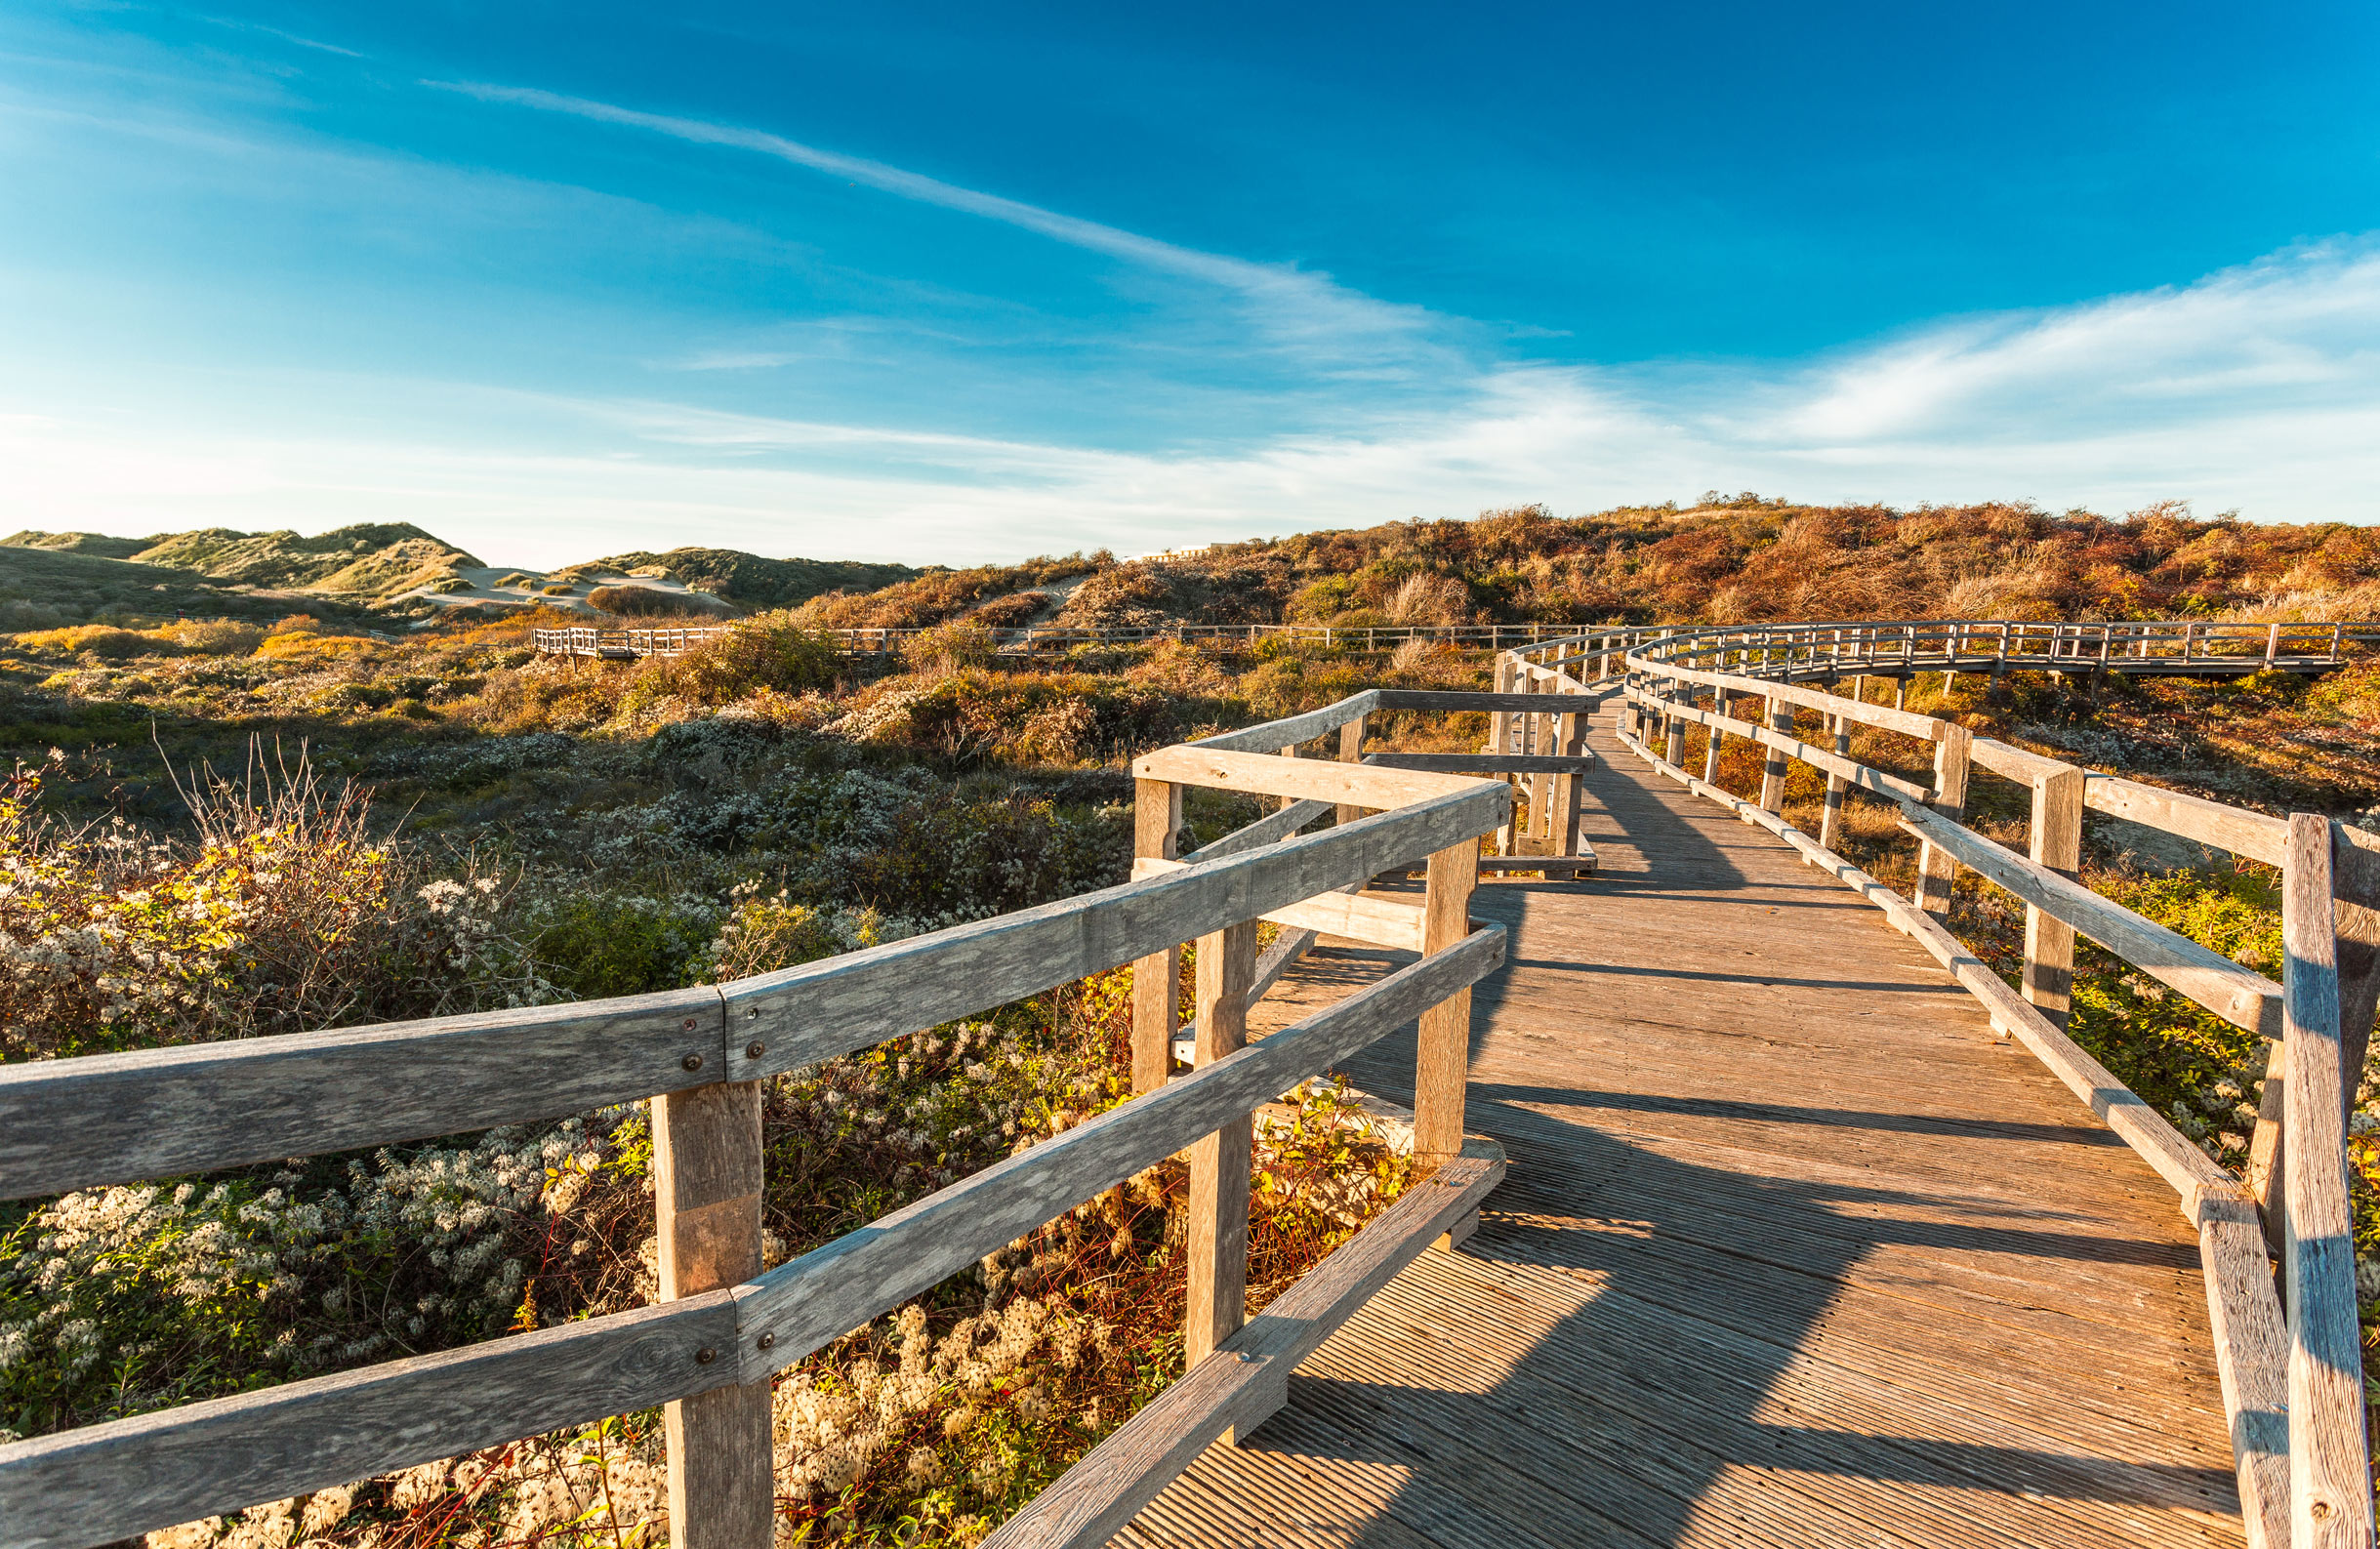 Enjoy a coastal stroll on nearby Merlimont’s boardwalk